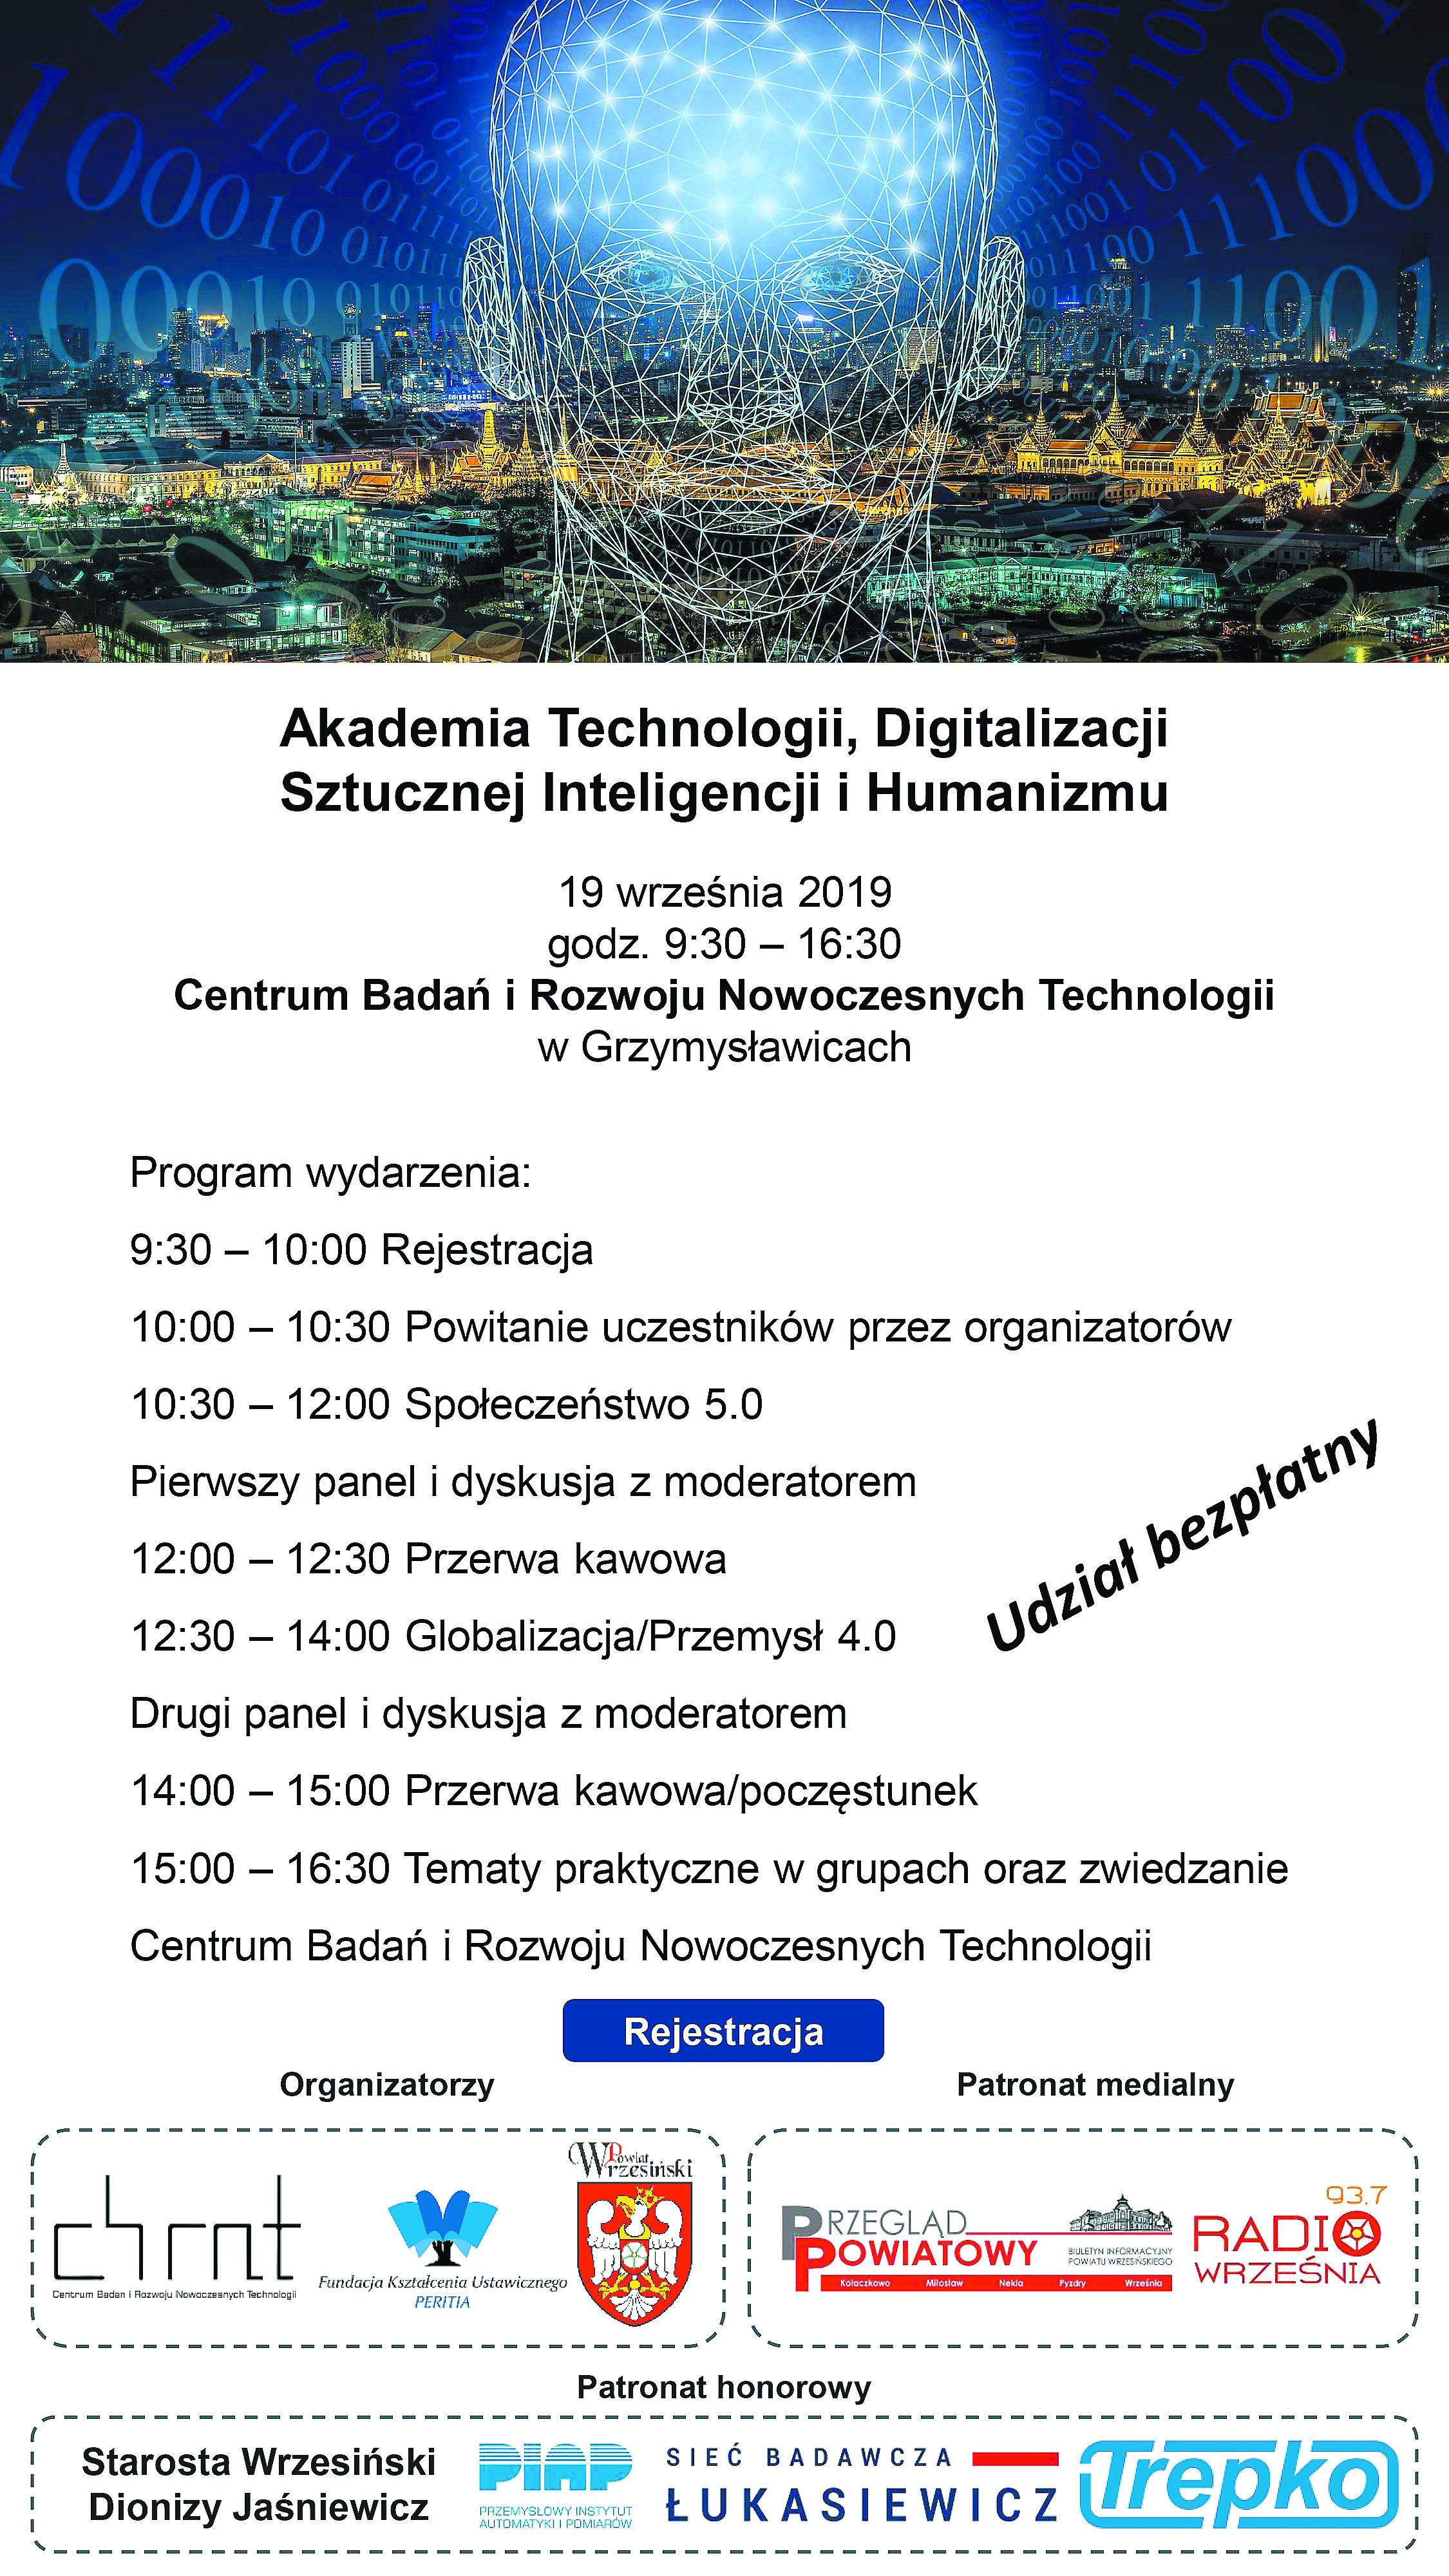 Akademia Technologii, Digitalizacji Sztucznej Inteligencji i Humanizmu